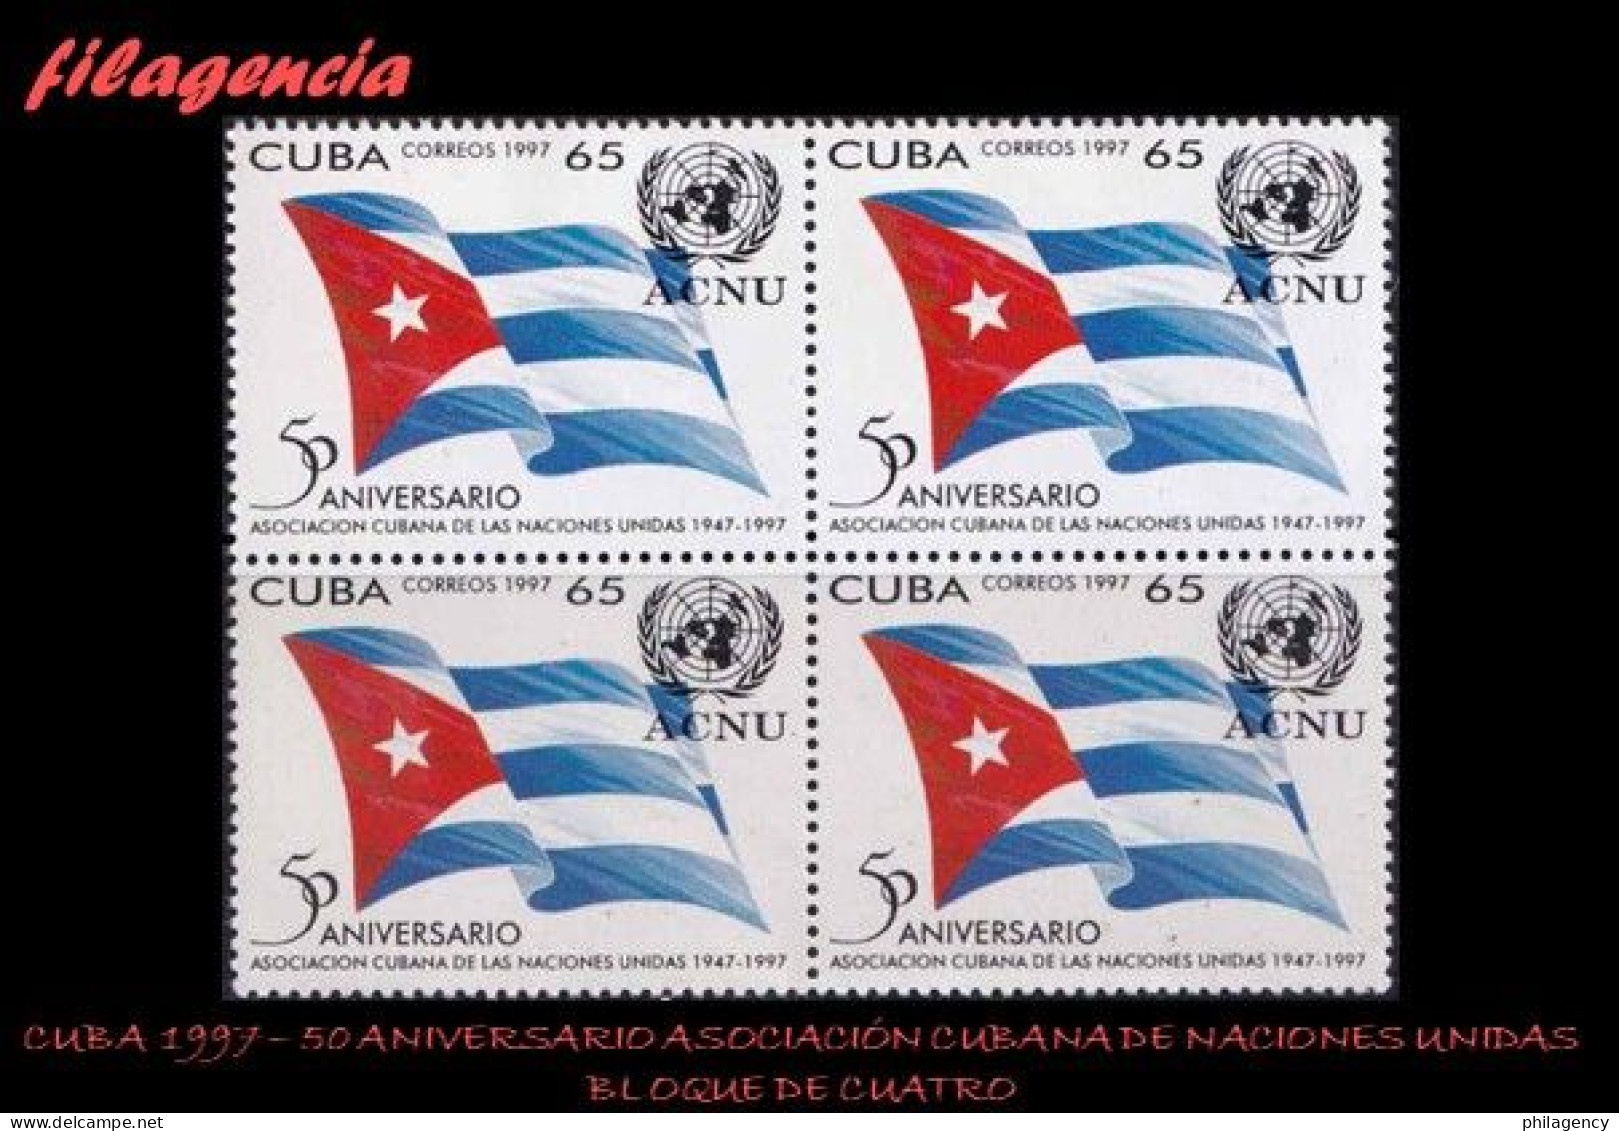 CUBA. BLOQUES DE CUATRO. 1997-13 CINCUENTENARIO DE LA ASOCIACIÓN CUBANA DE NACIONES UNIDAS - Ongebruikt